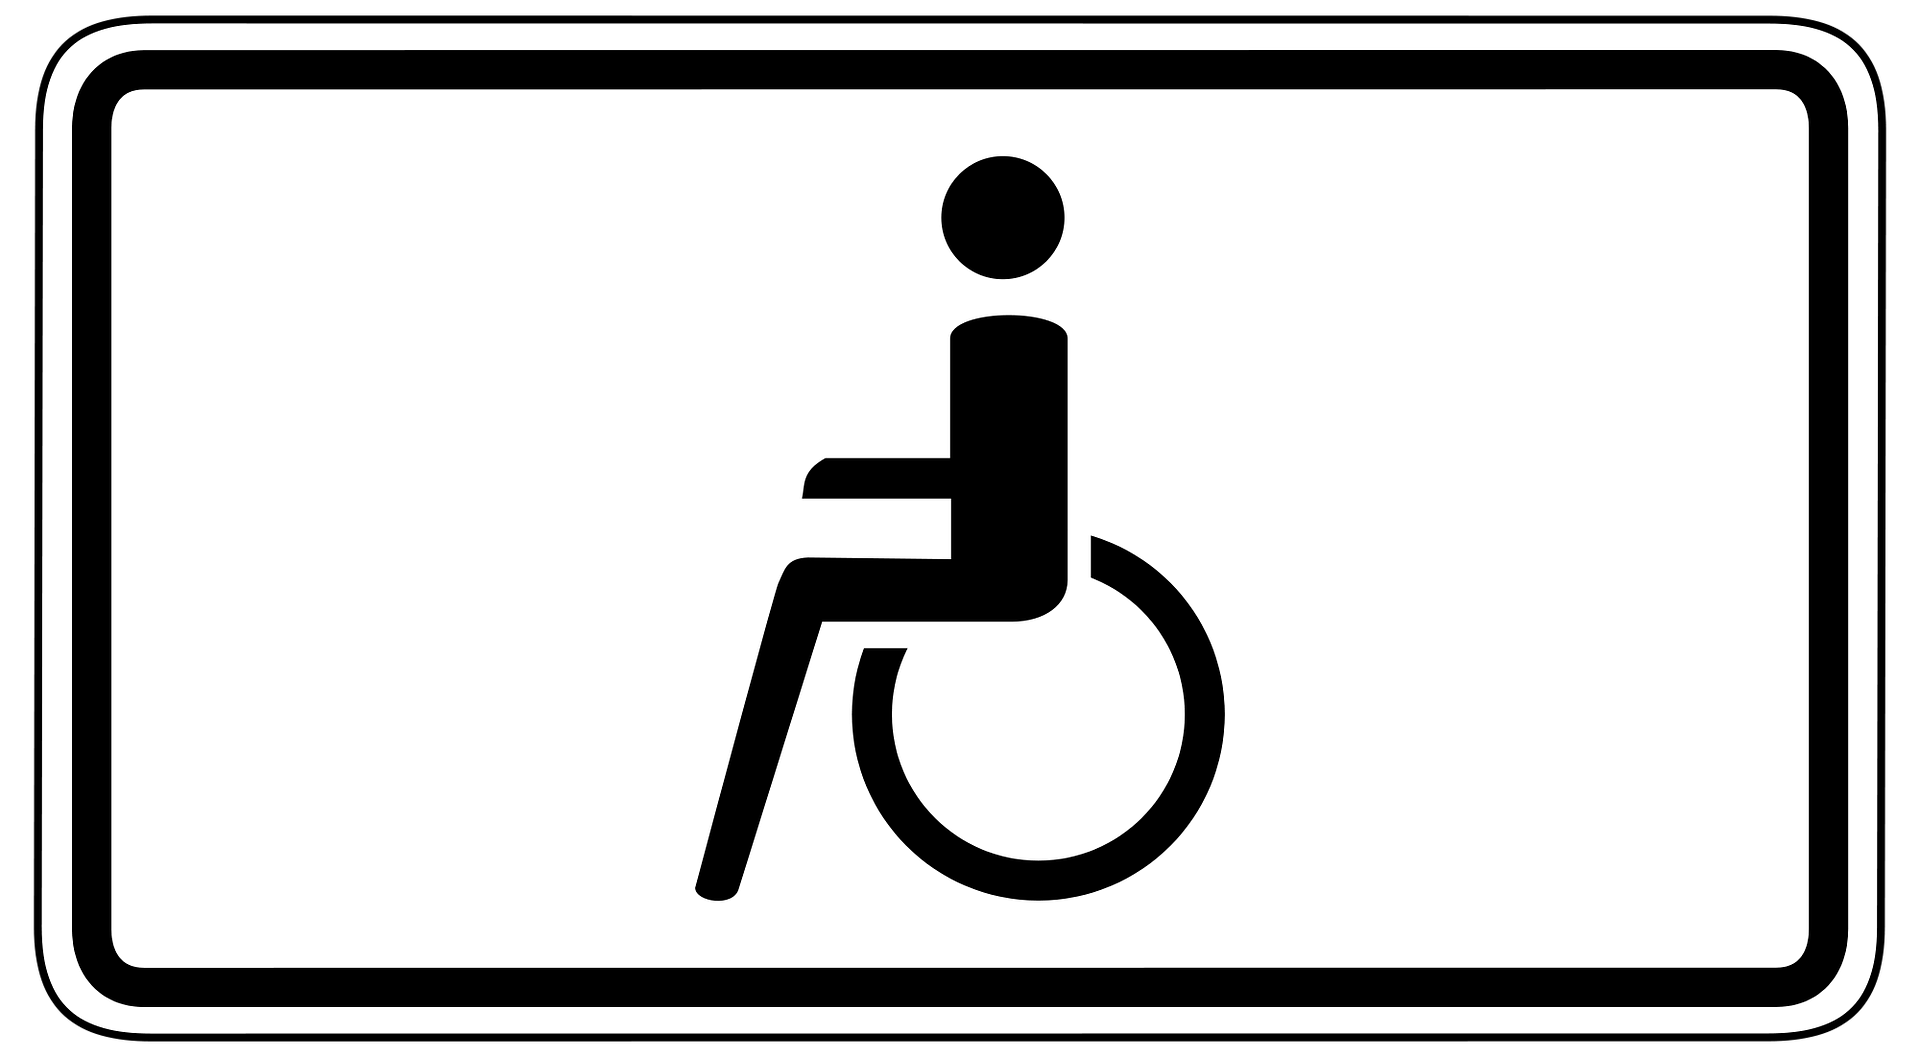 Piktogramm eines Rollstuhlfahrers